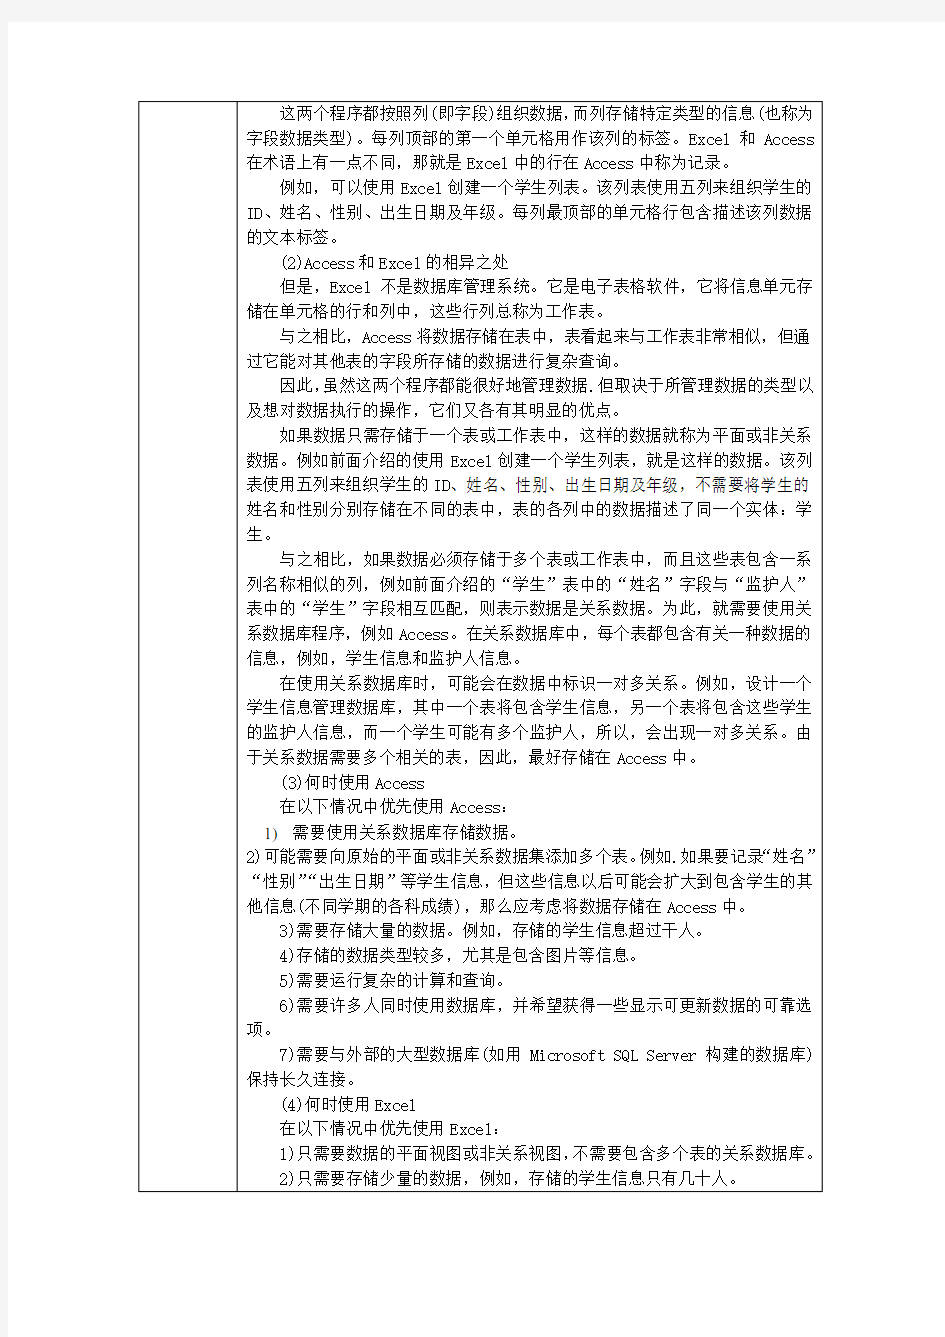 电子教案-《中文版Access 2010基础与实训》-A06-4280 项目二_数据库表_任务1 创建学生信息表